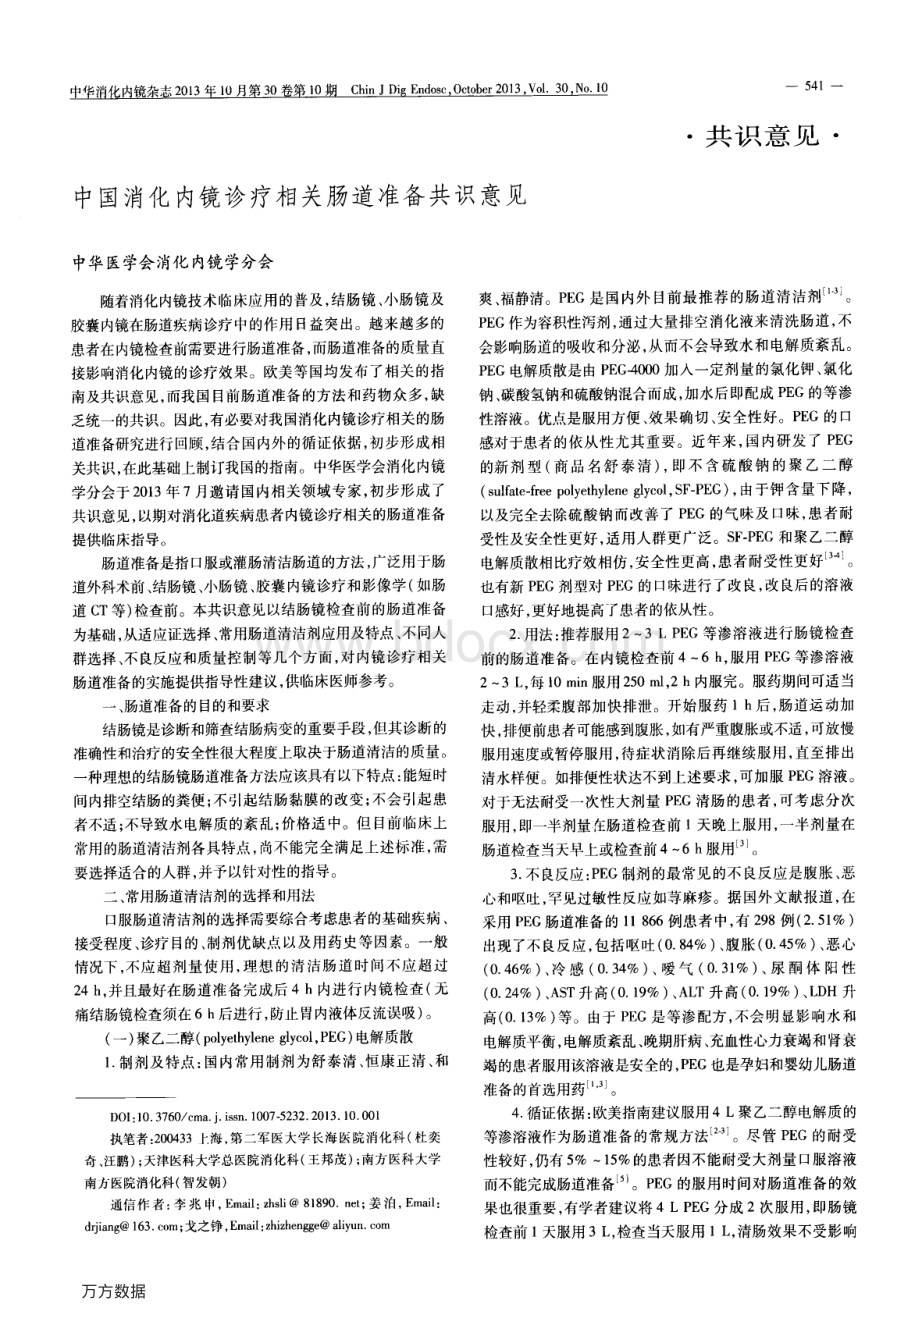 中国消化内镜诊疗相关肠道准备共识意见资料下载.pdf